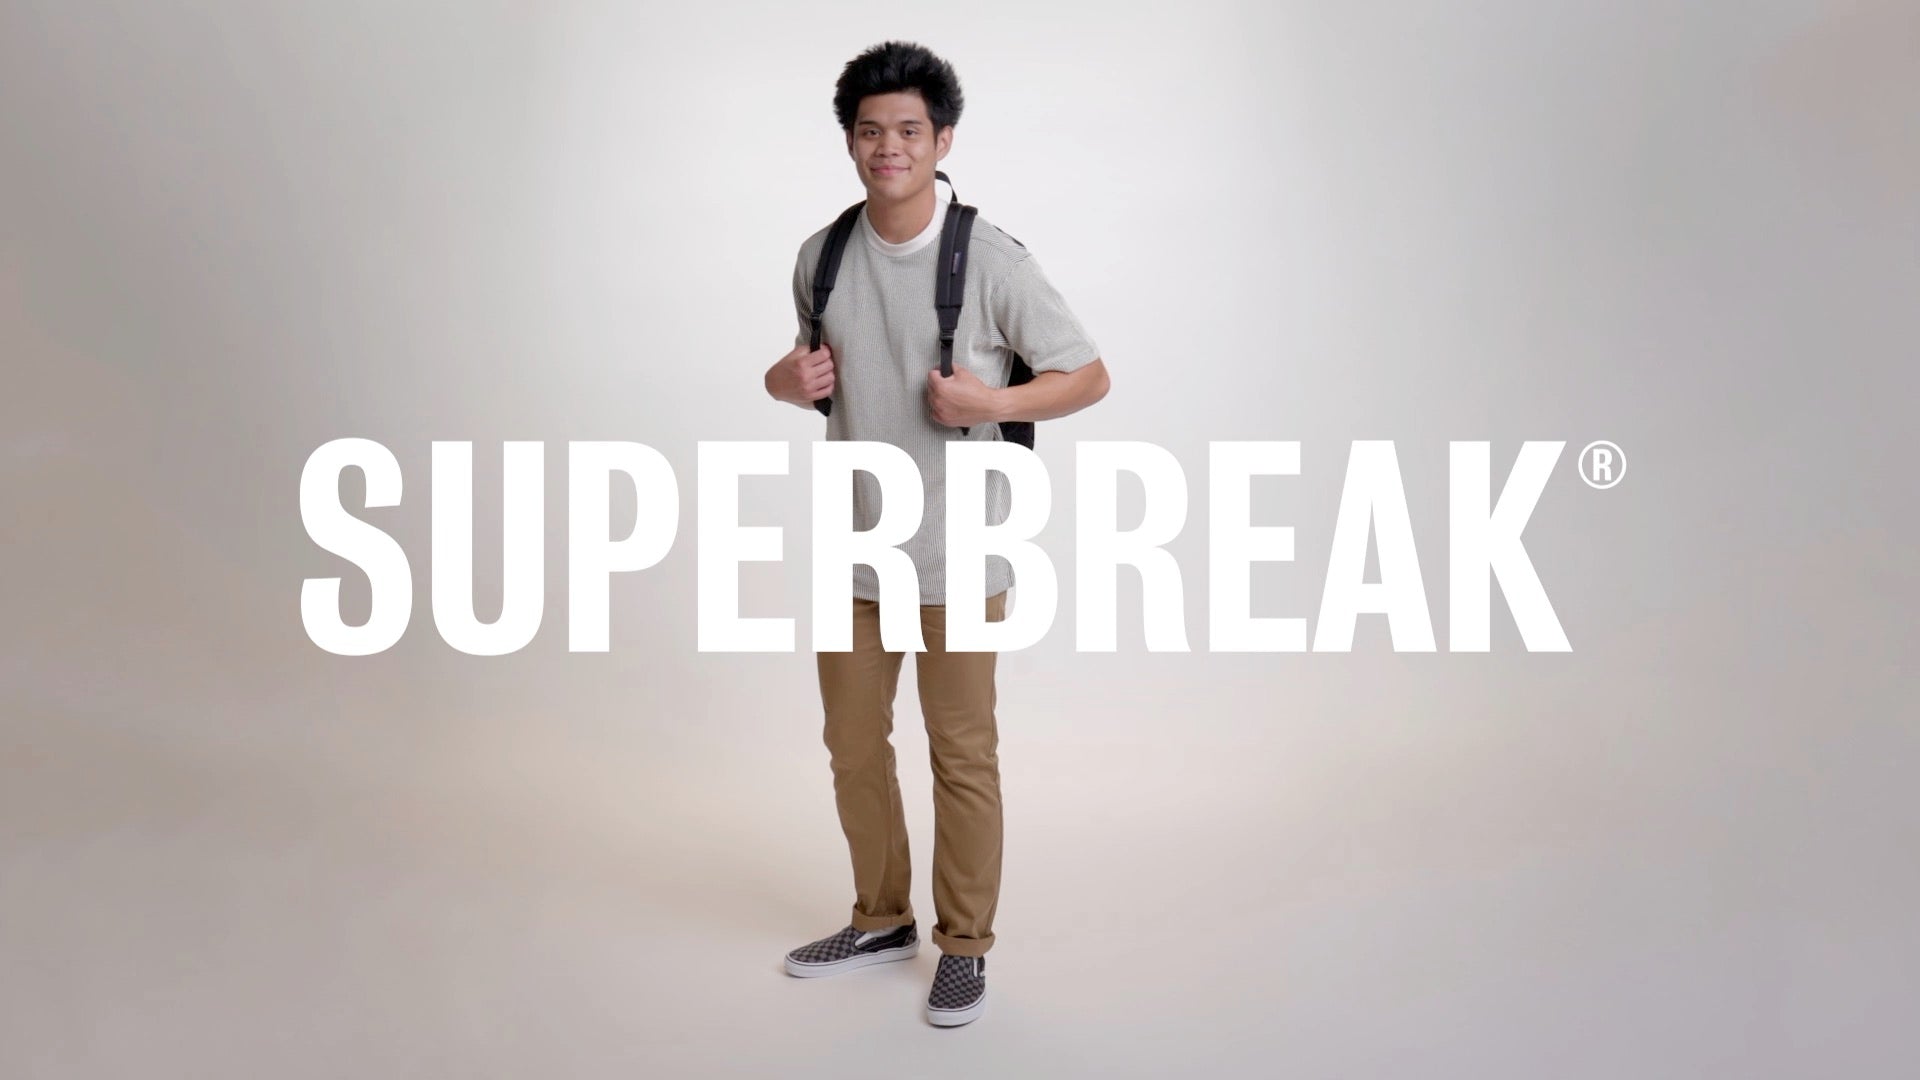 Load video: JanSport SuperBreak Product Video